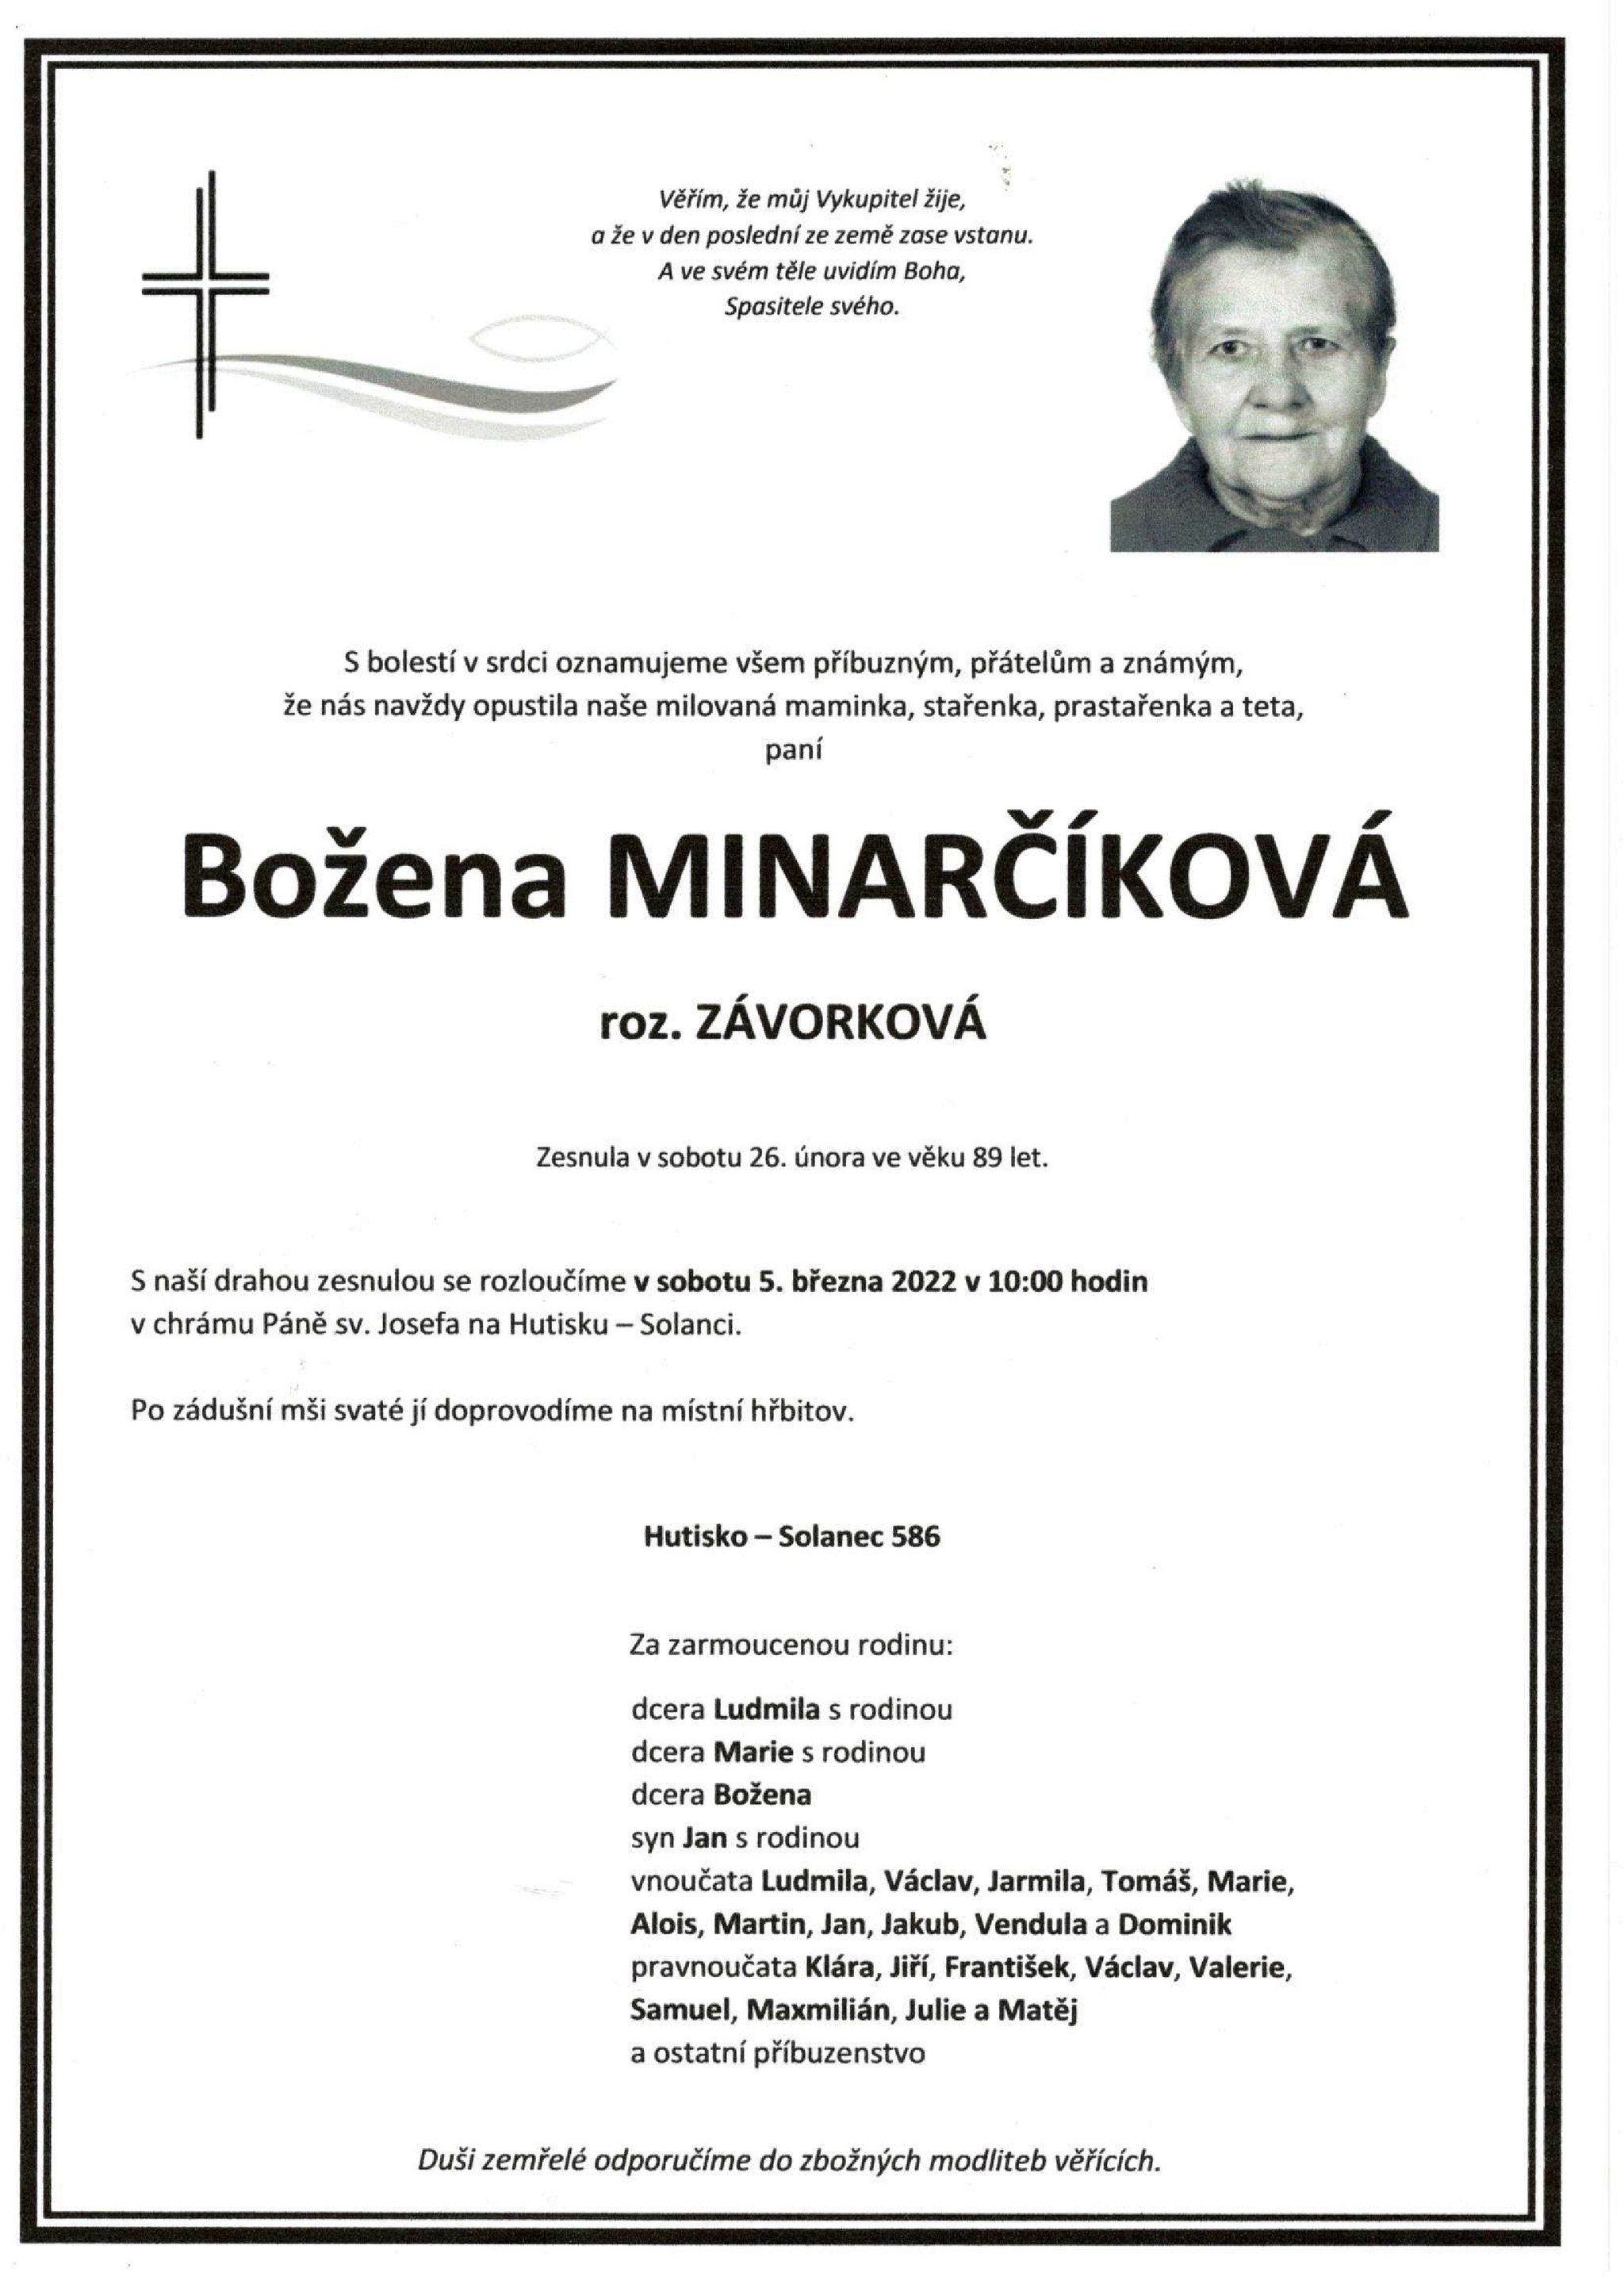 Božena Minarčíková